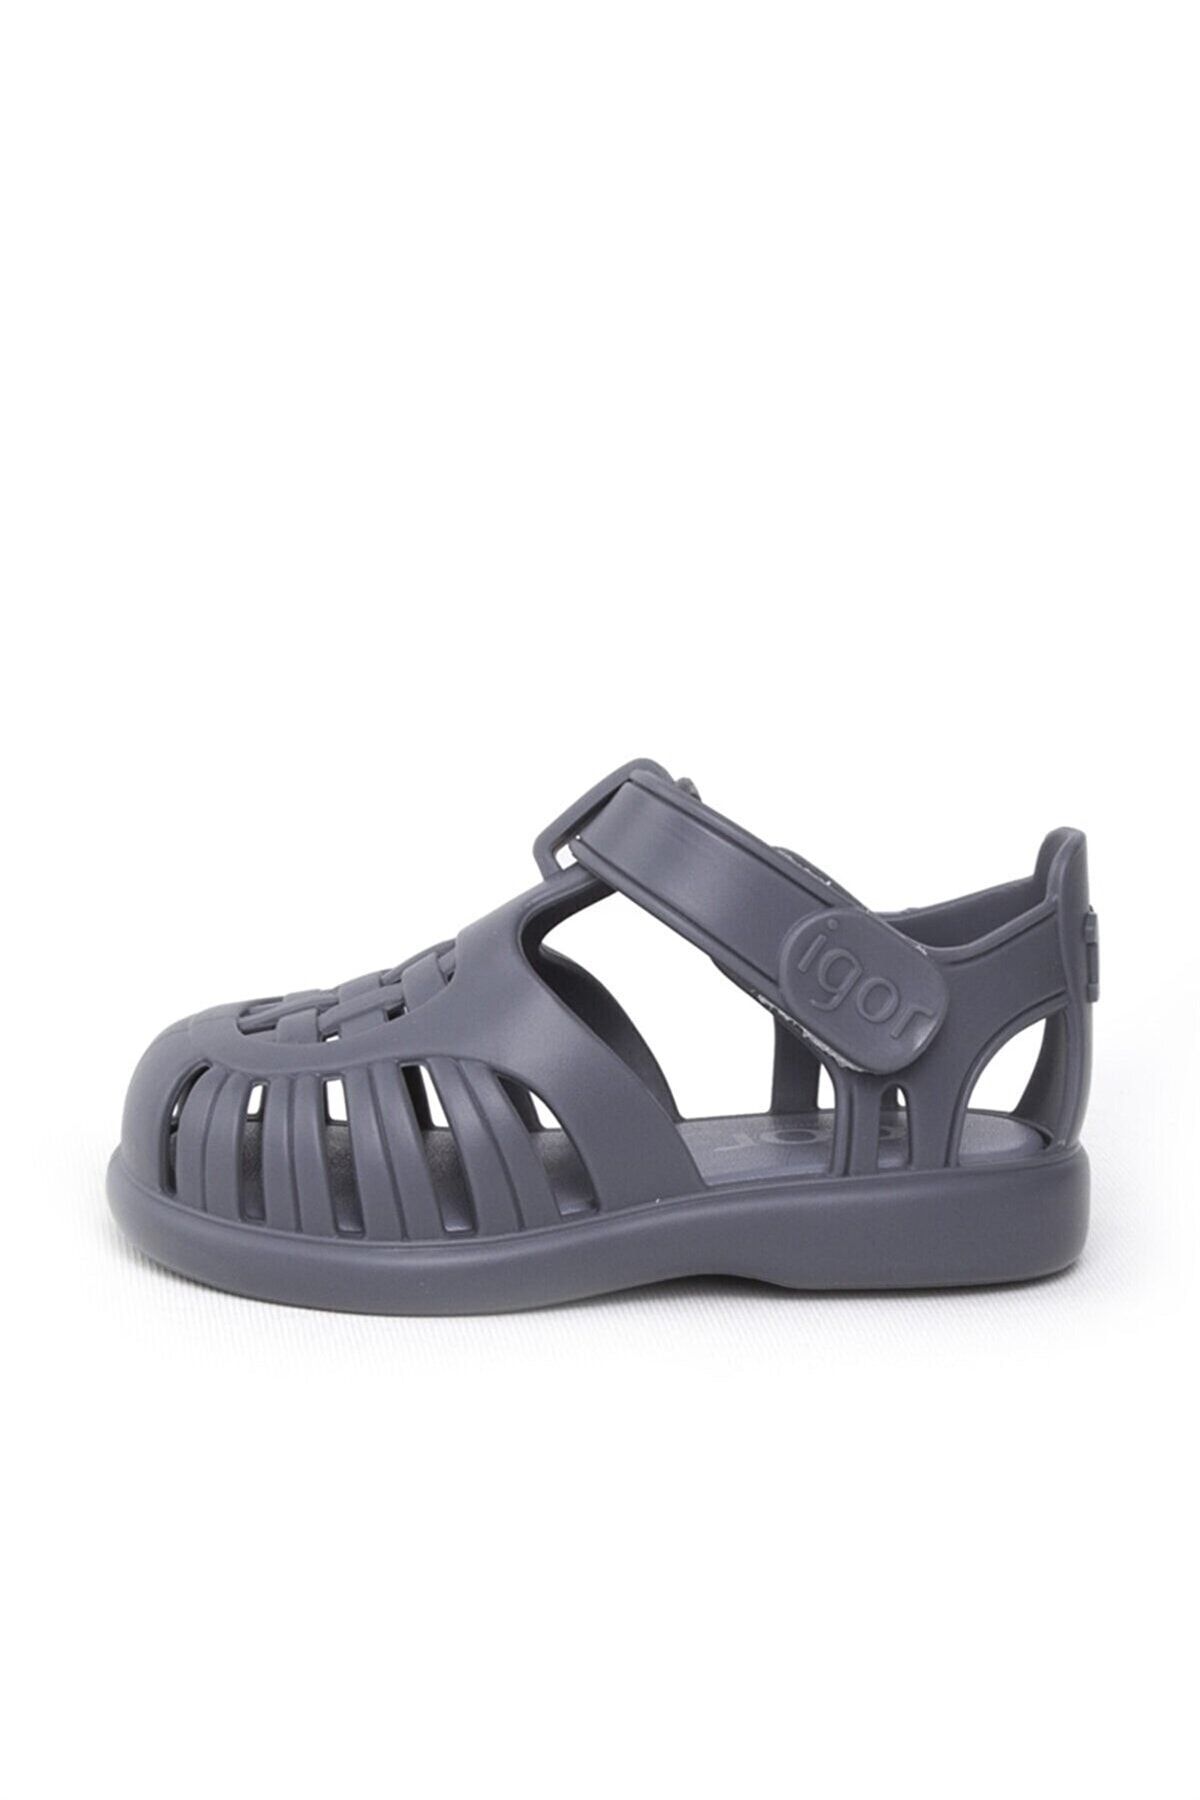 IGOR Tobby Solid Çocuk Sandalet Ayakkabı S10271-225oceano